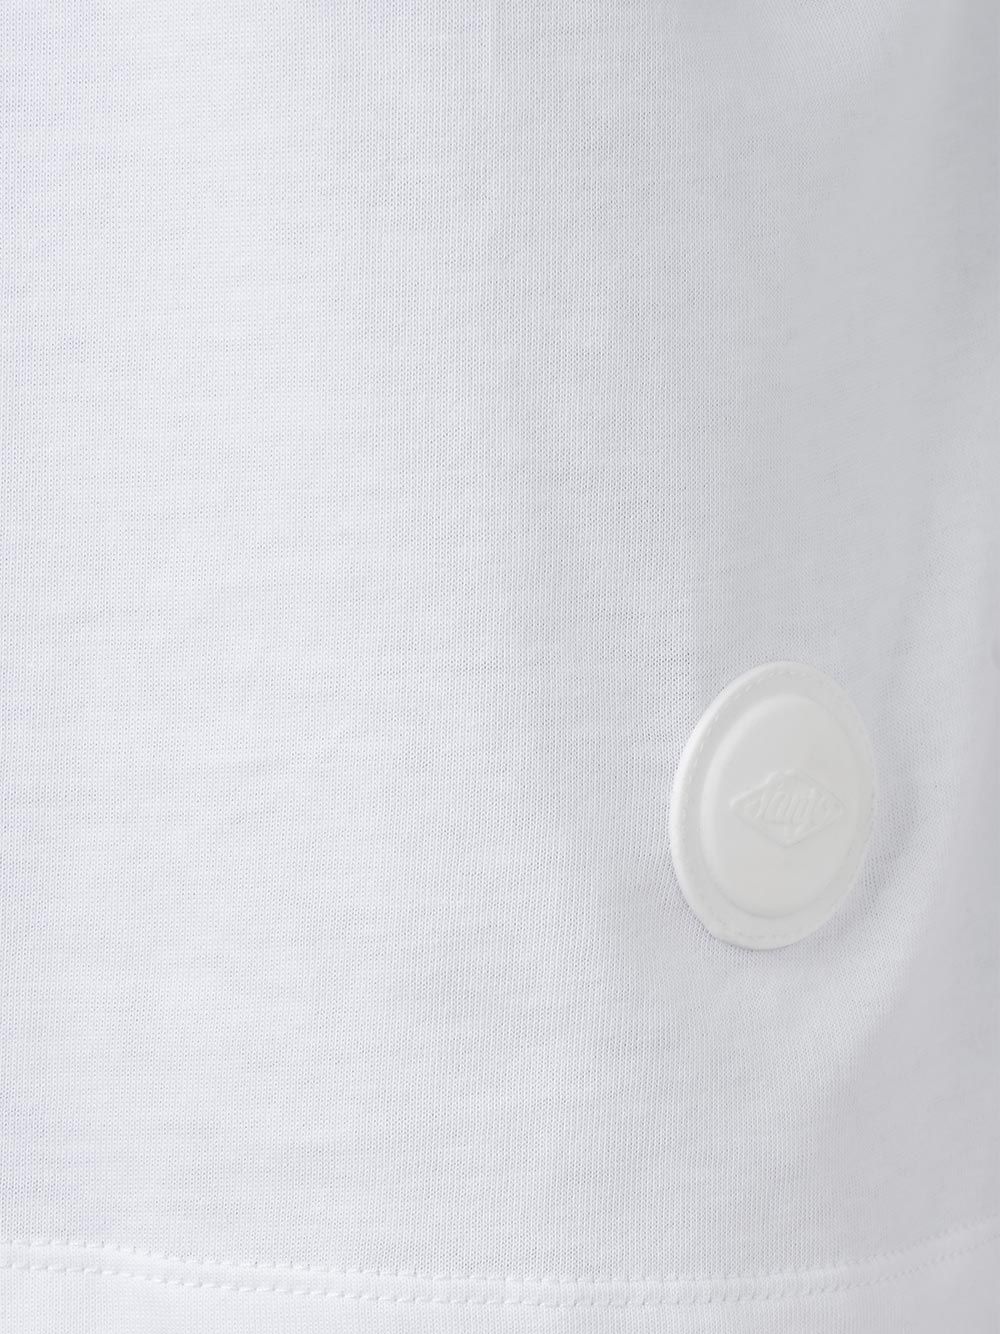 T-Shirt Sanjo Branca | Sanjo